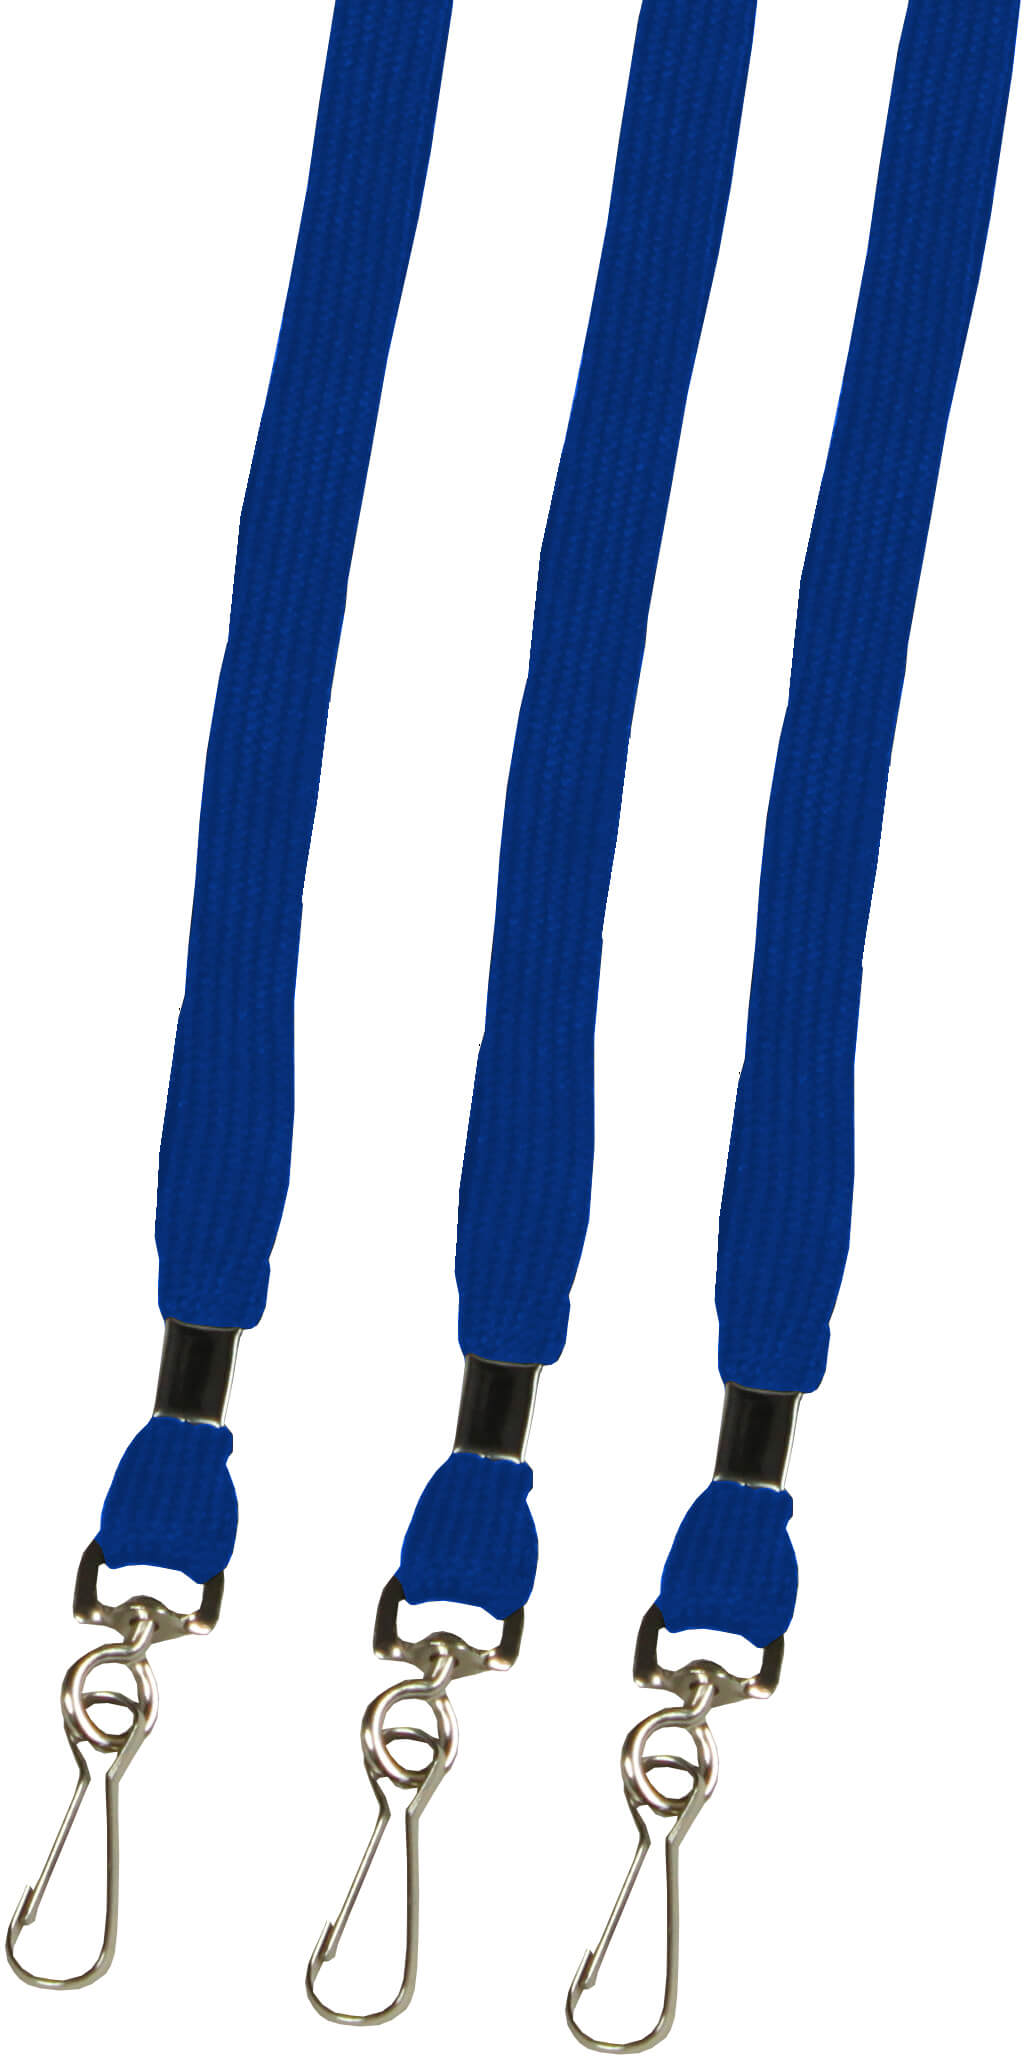 Umhängebänder mit Haken in blau sofort lieferbar! | Bestnr. UMBAMS-100-BL